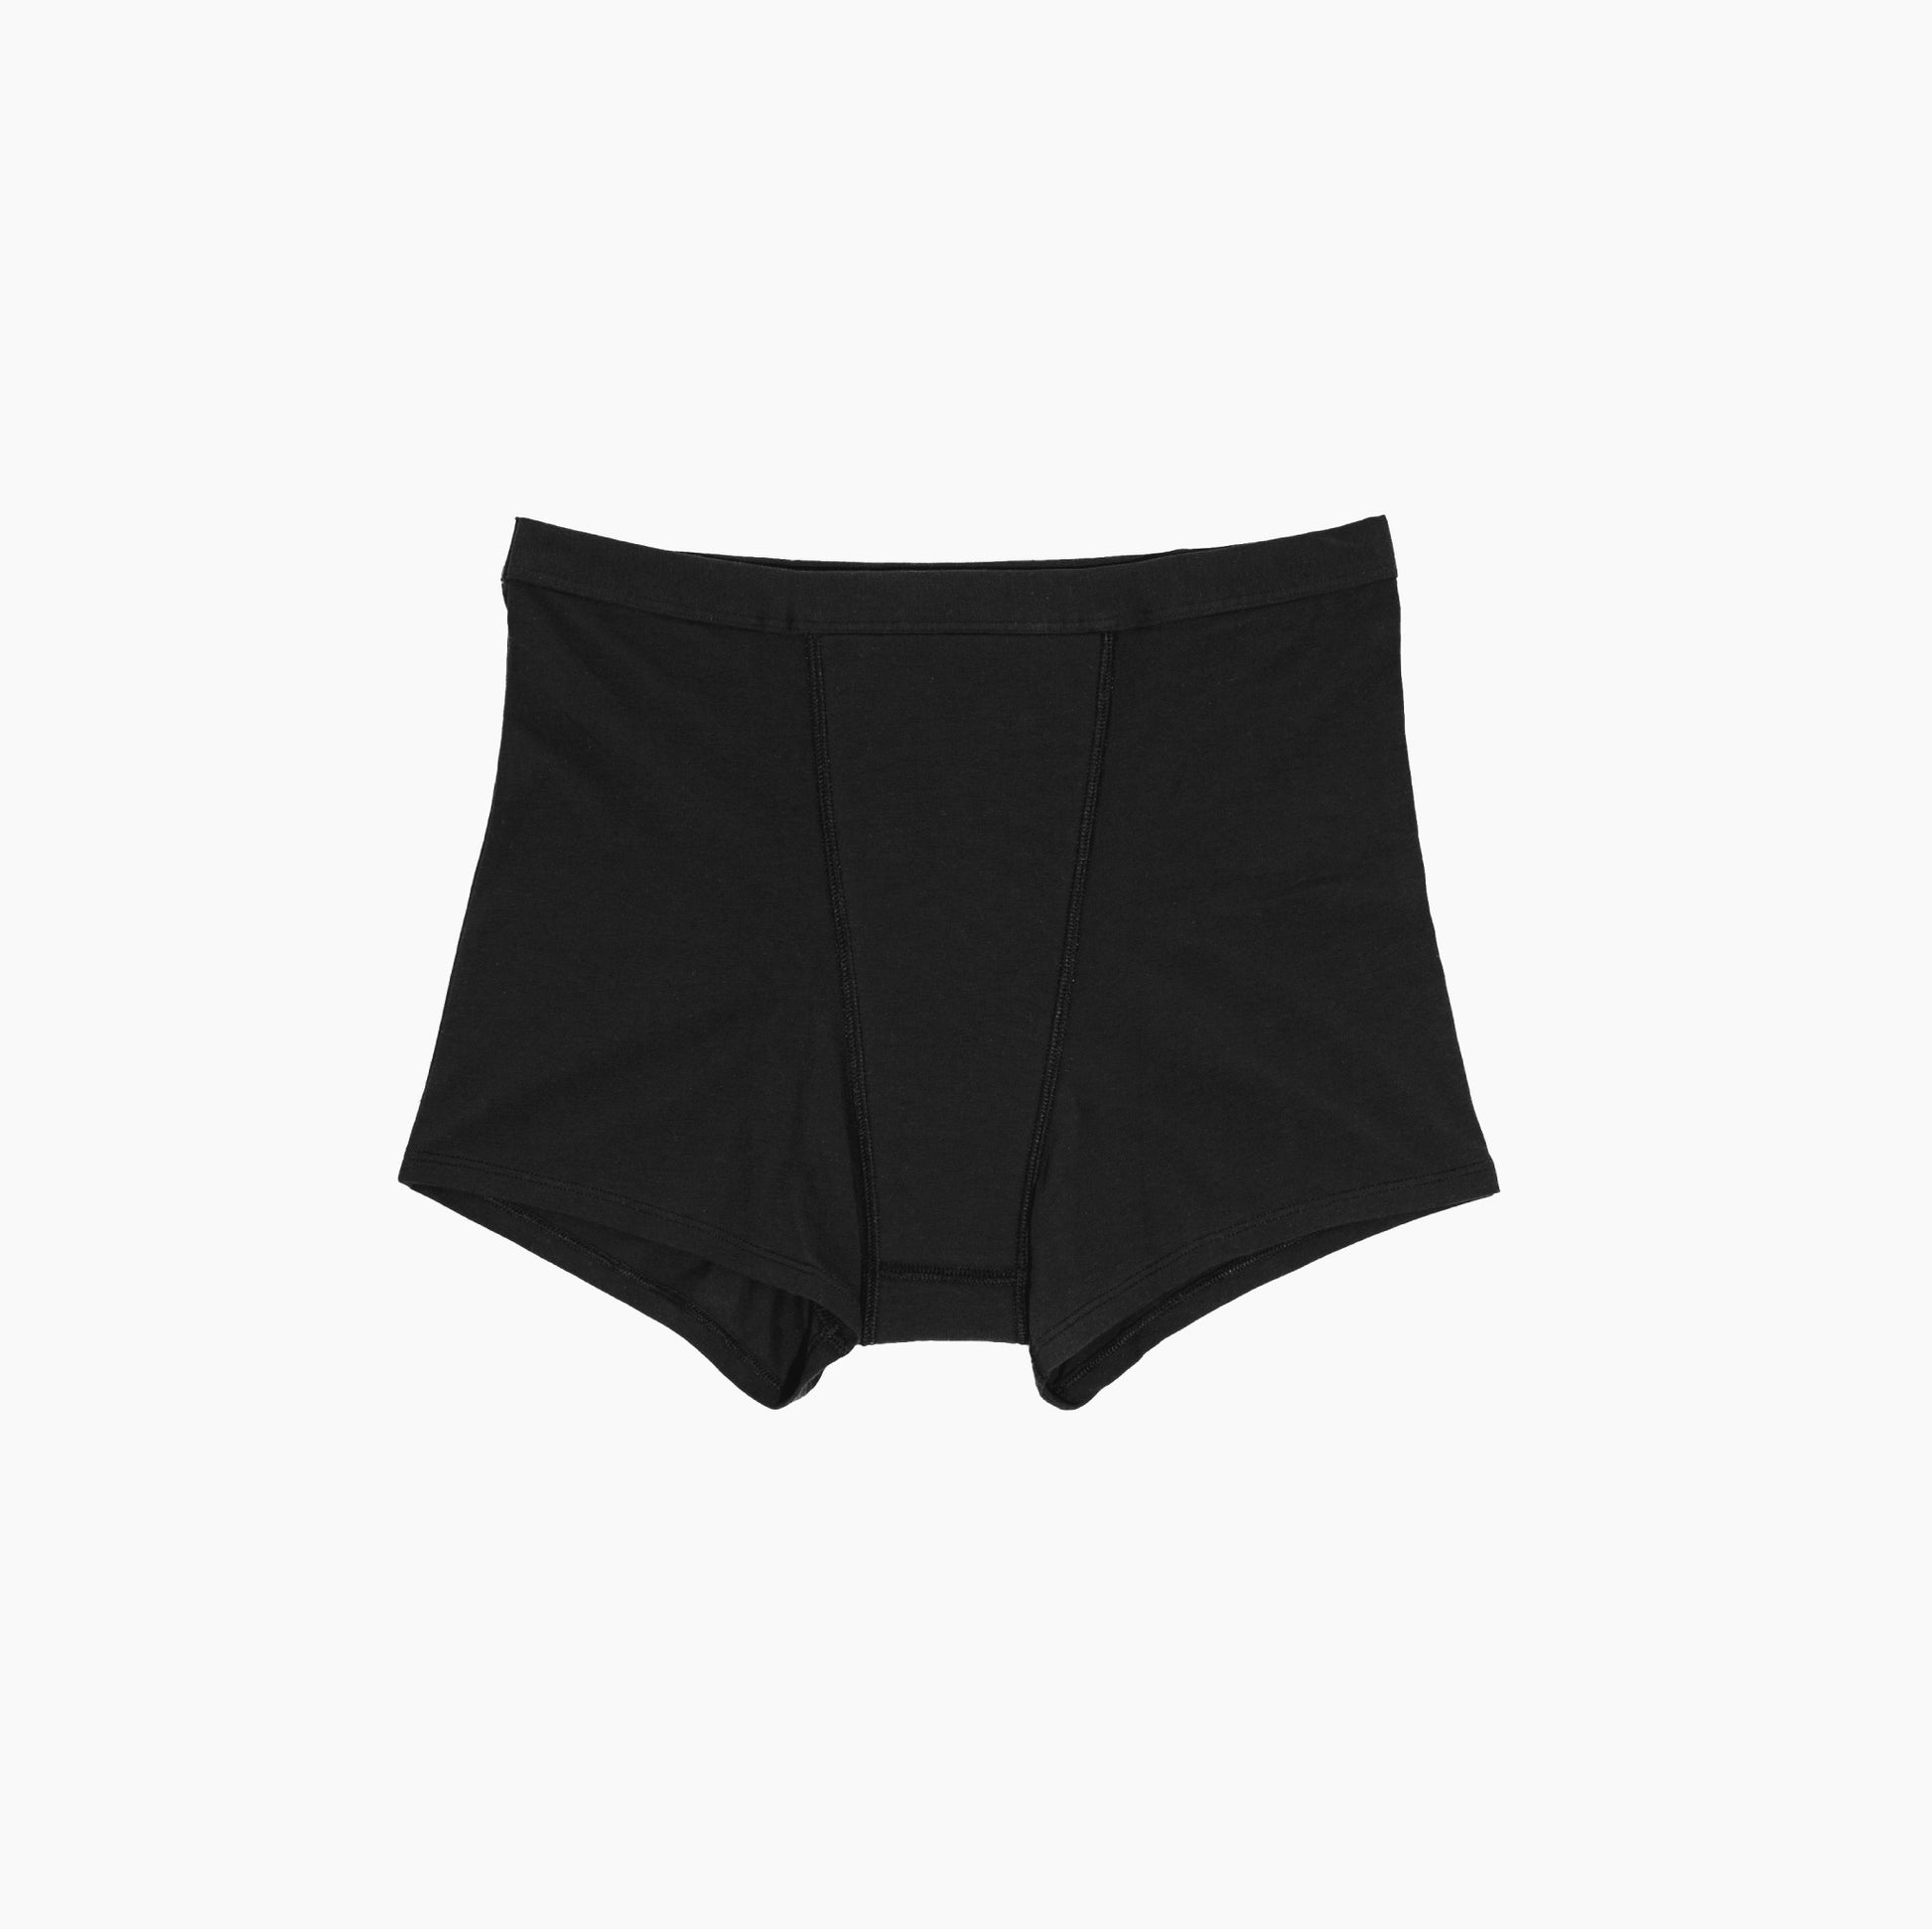 2~Unders by Proof Period Underwear light Absorbency Briefs - Black - xl